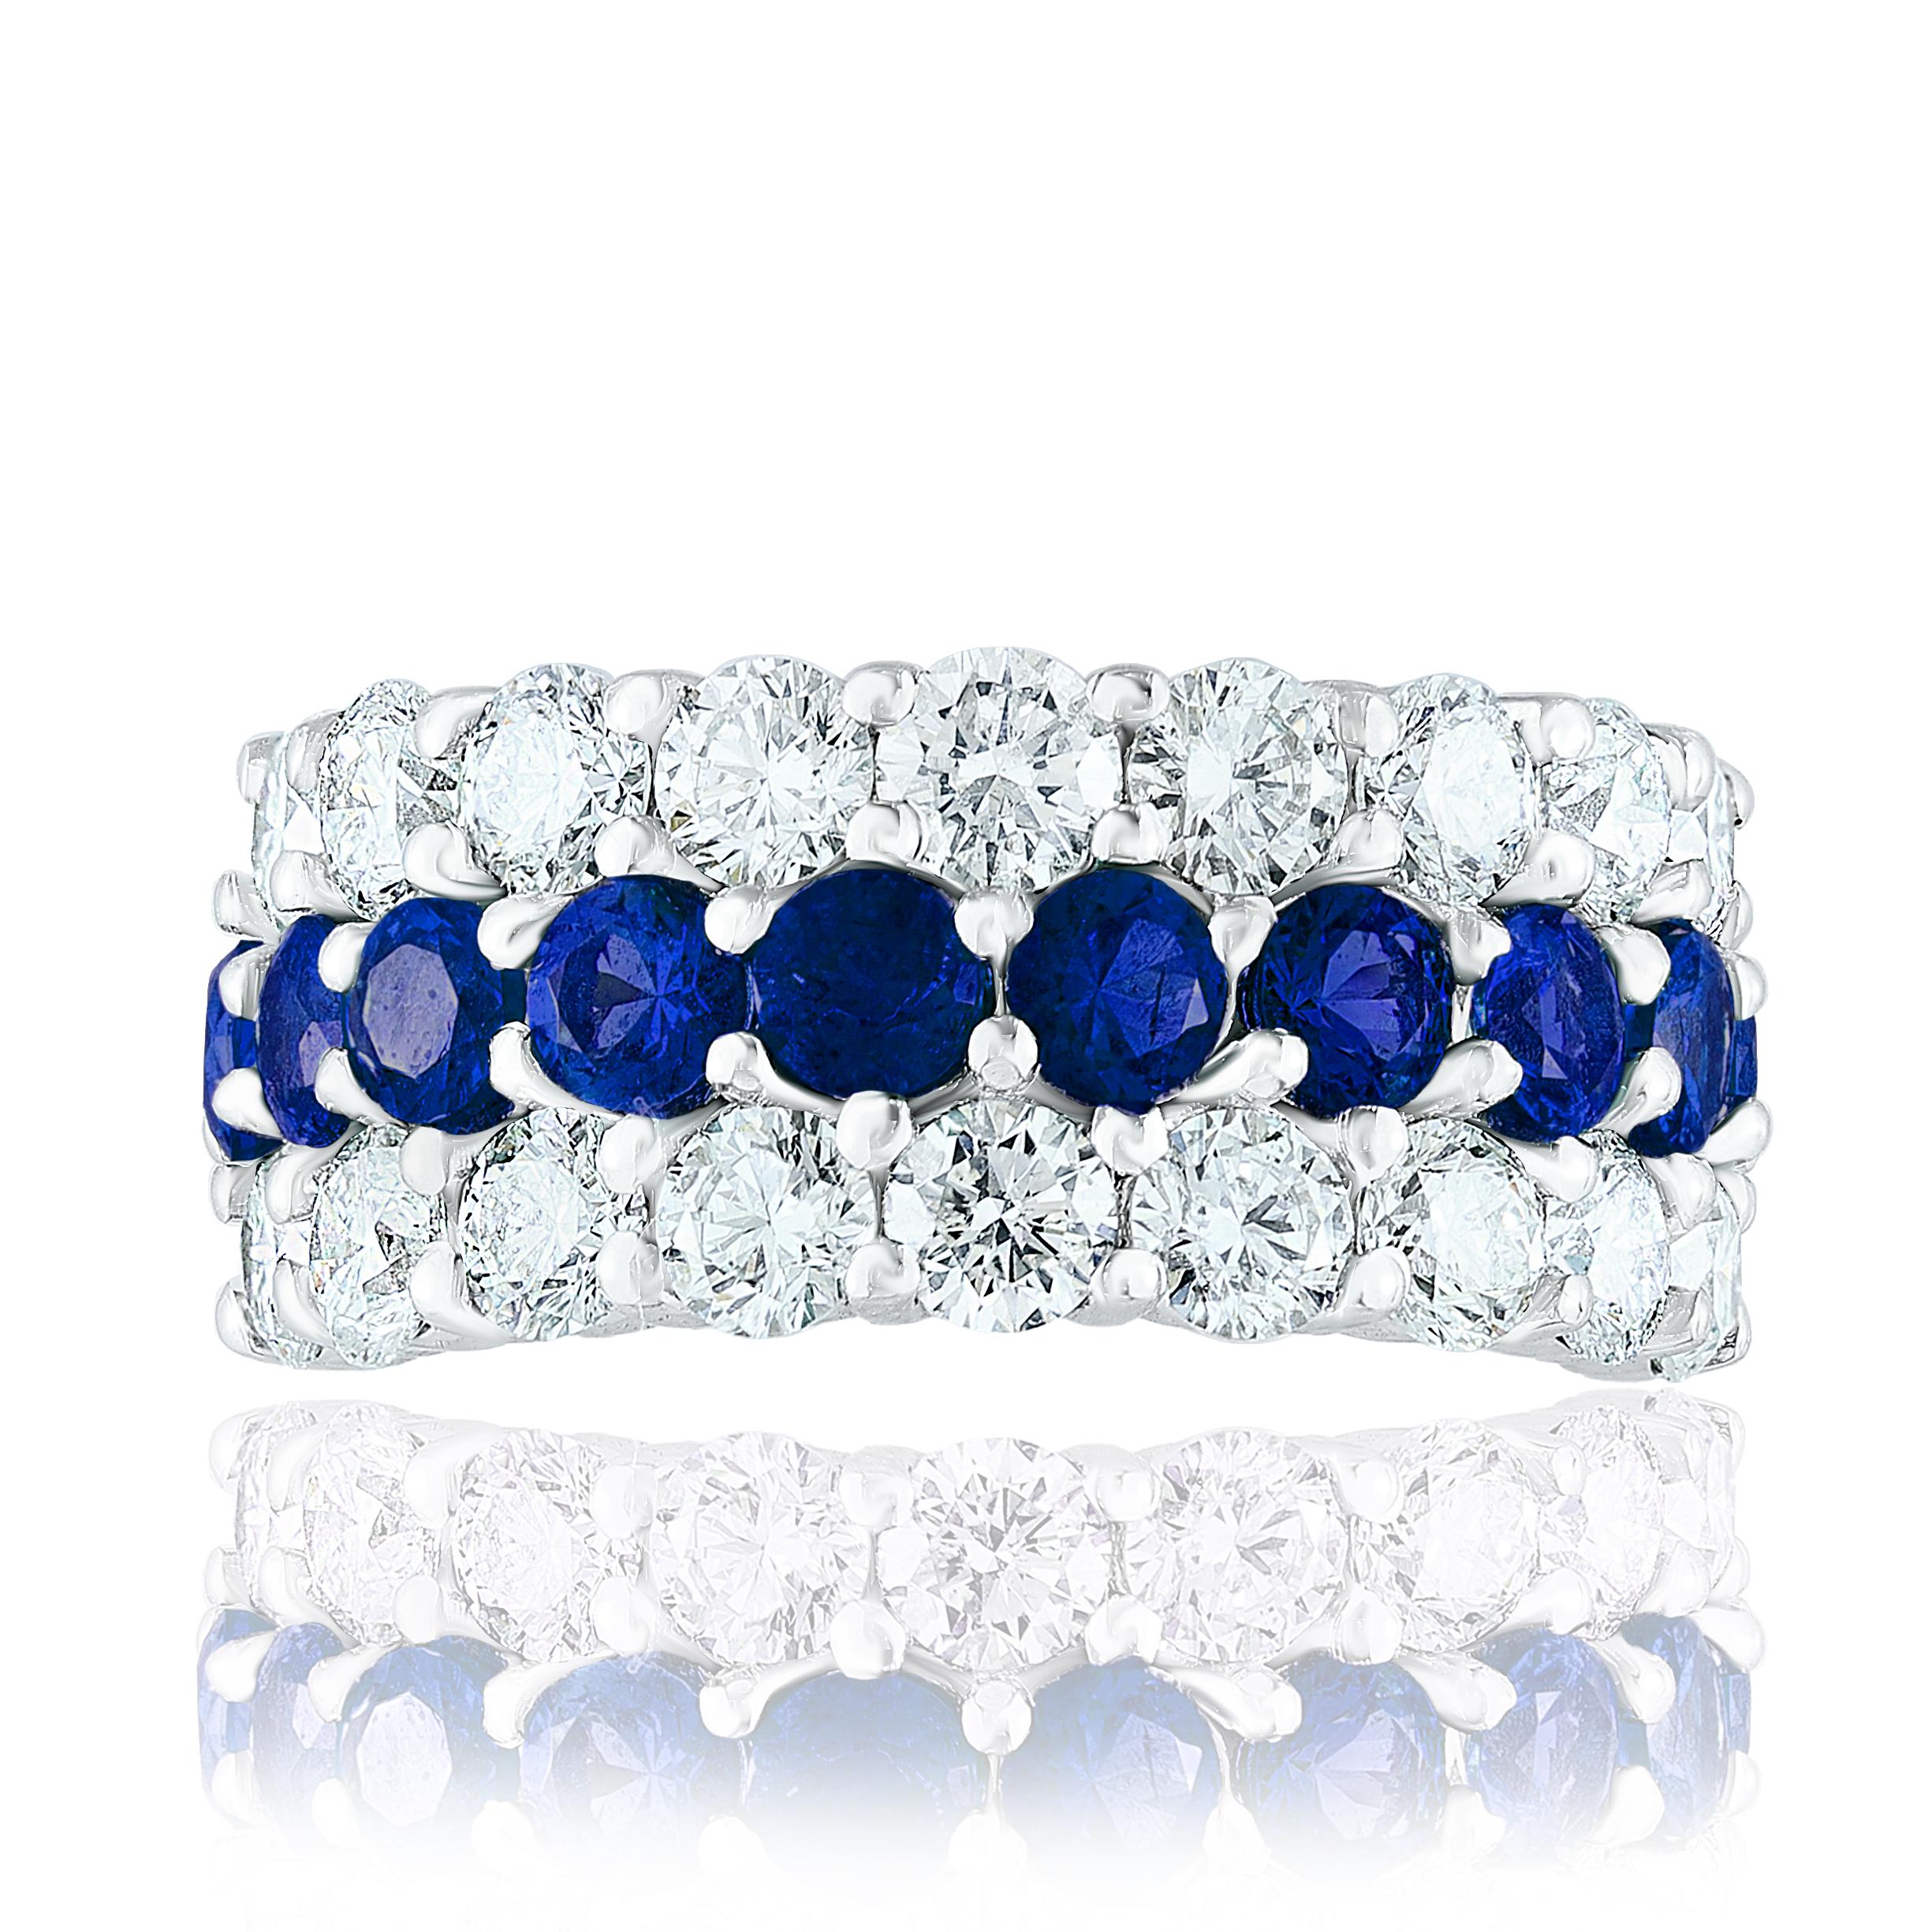 Ein einzigartiger und modischer Ring mit zwei Reihen von 18 runden Diamanten und einer Reihe von 10 lebhaften blauen Saphiren in der Mitte, gefasst in einem Band. Der blaue Saphir wiegt 2,60 Karat und die Diamanten wiegen insgesamt 2,70 Karat. Ein